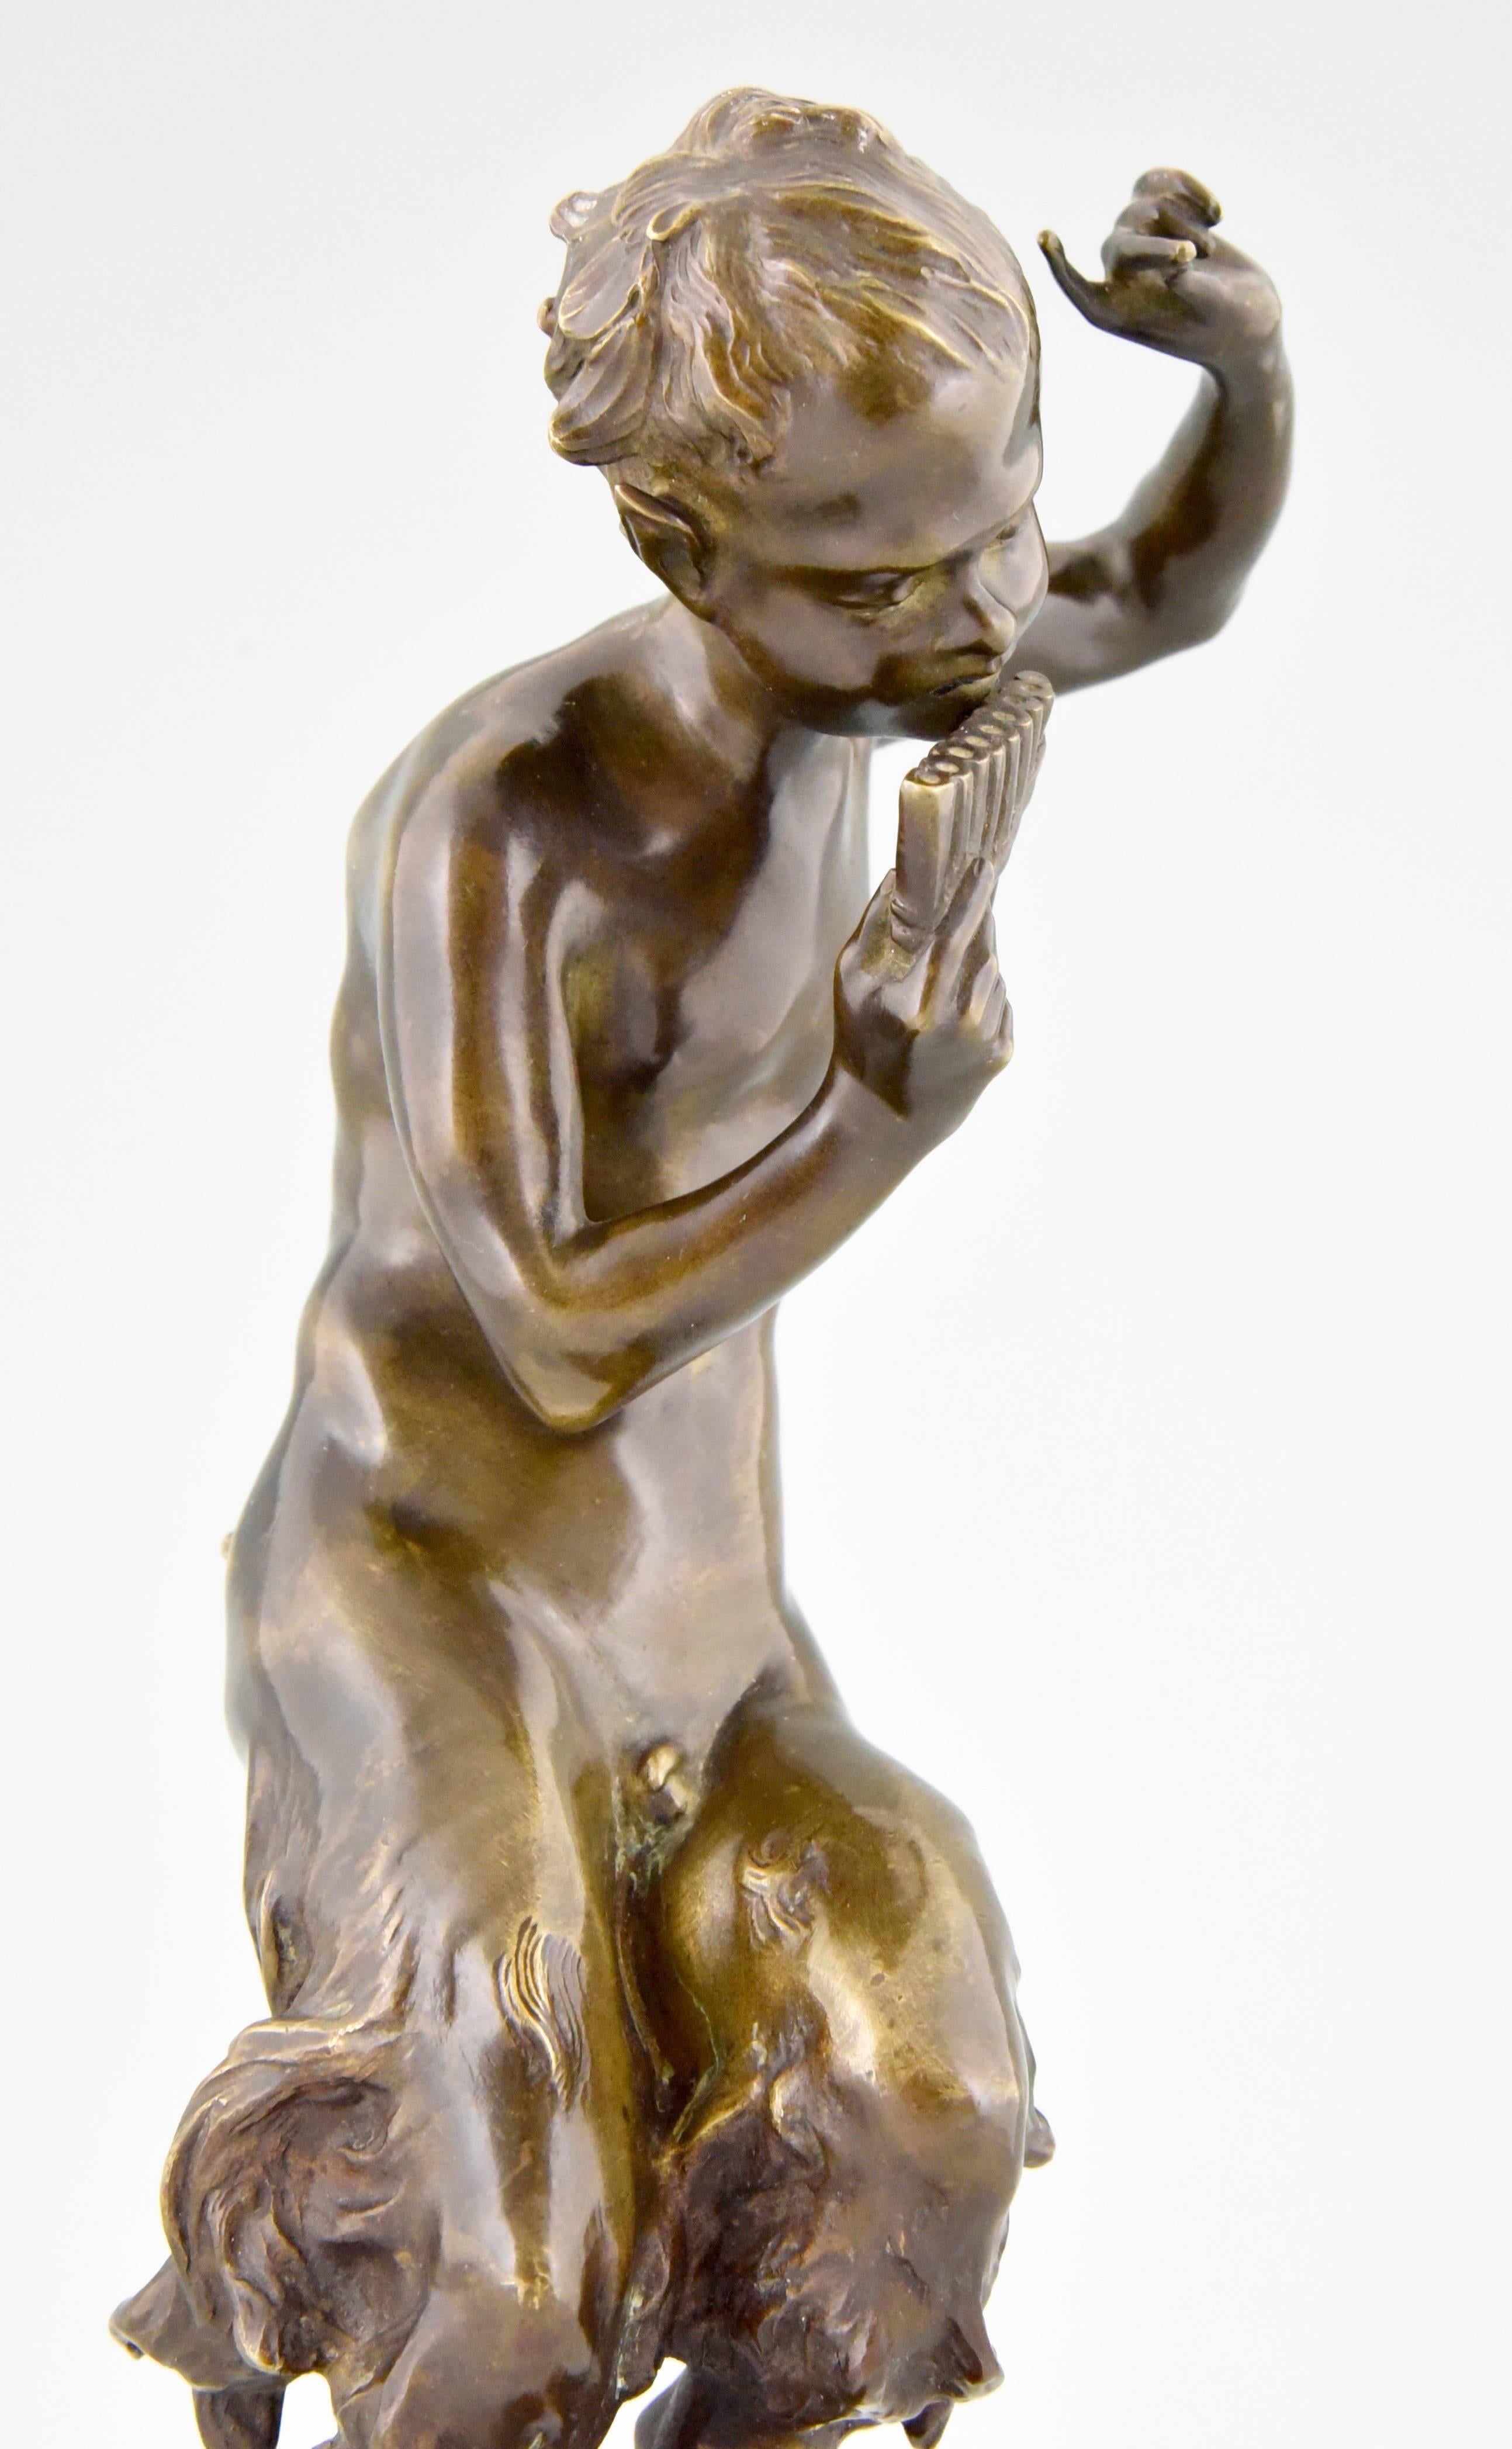 Romantic Antique Bronze Sculpture of a Dancing Satyr by Jules Jacques Labatut 1880